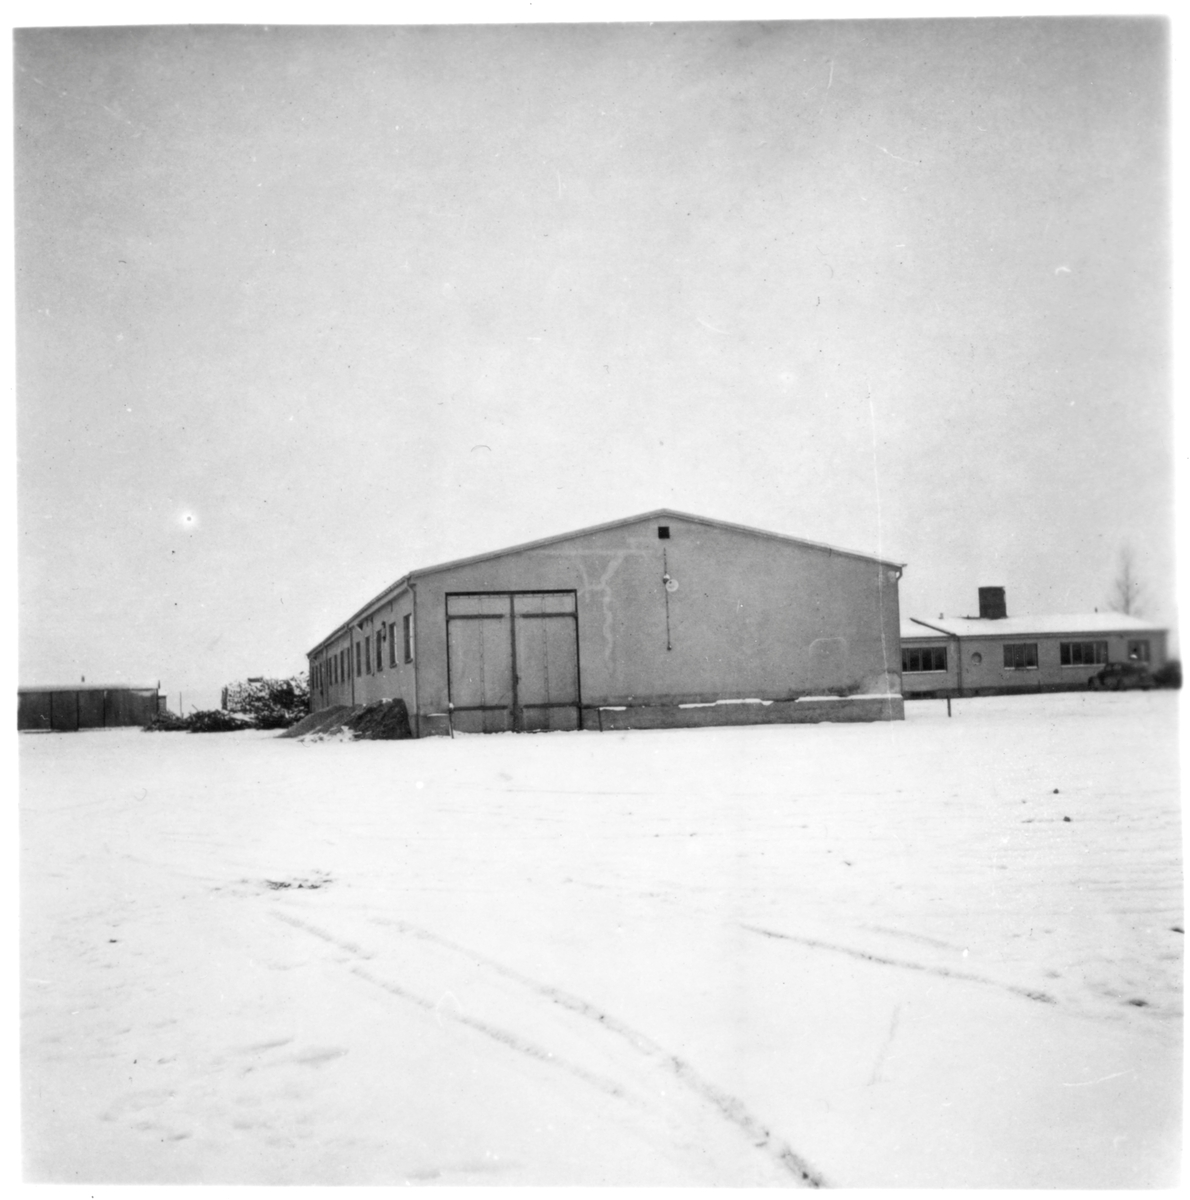 Vägstation M7, Dalby. Garagebyggnad, baksidan och ena gaveln. Till höger skymtar byggnaden med förråd och kontor.